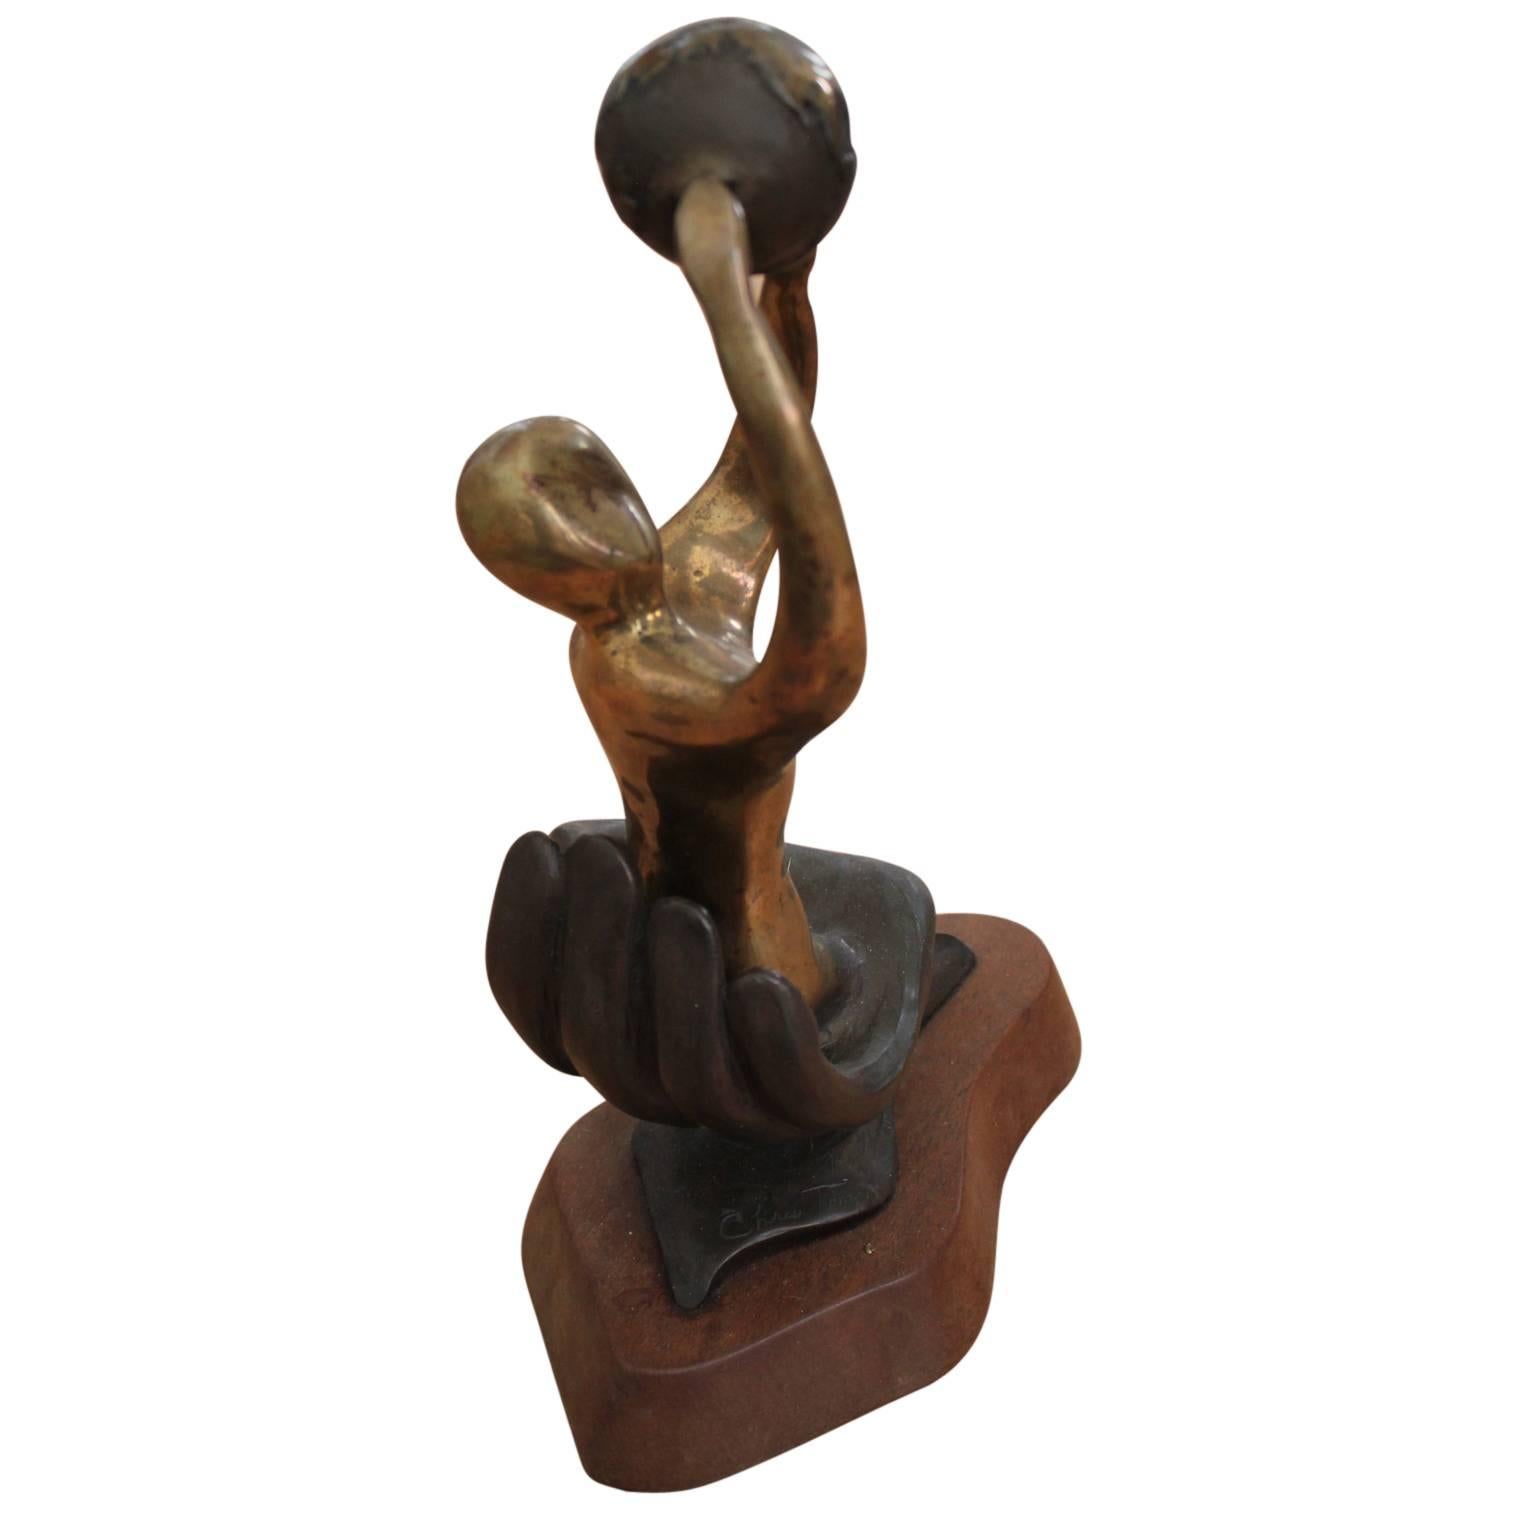 Abstrakte figurative Skulptur einer Frau, die eine Weltkugel über ihrem Kopf hält und in einer Handfläche sitzt. Die Bronzestatue steht auf einem Holzsockel. Er wurde 1986 als Houston Service Award verliehen. Der Künstler hat das Werk signiert,